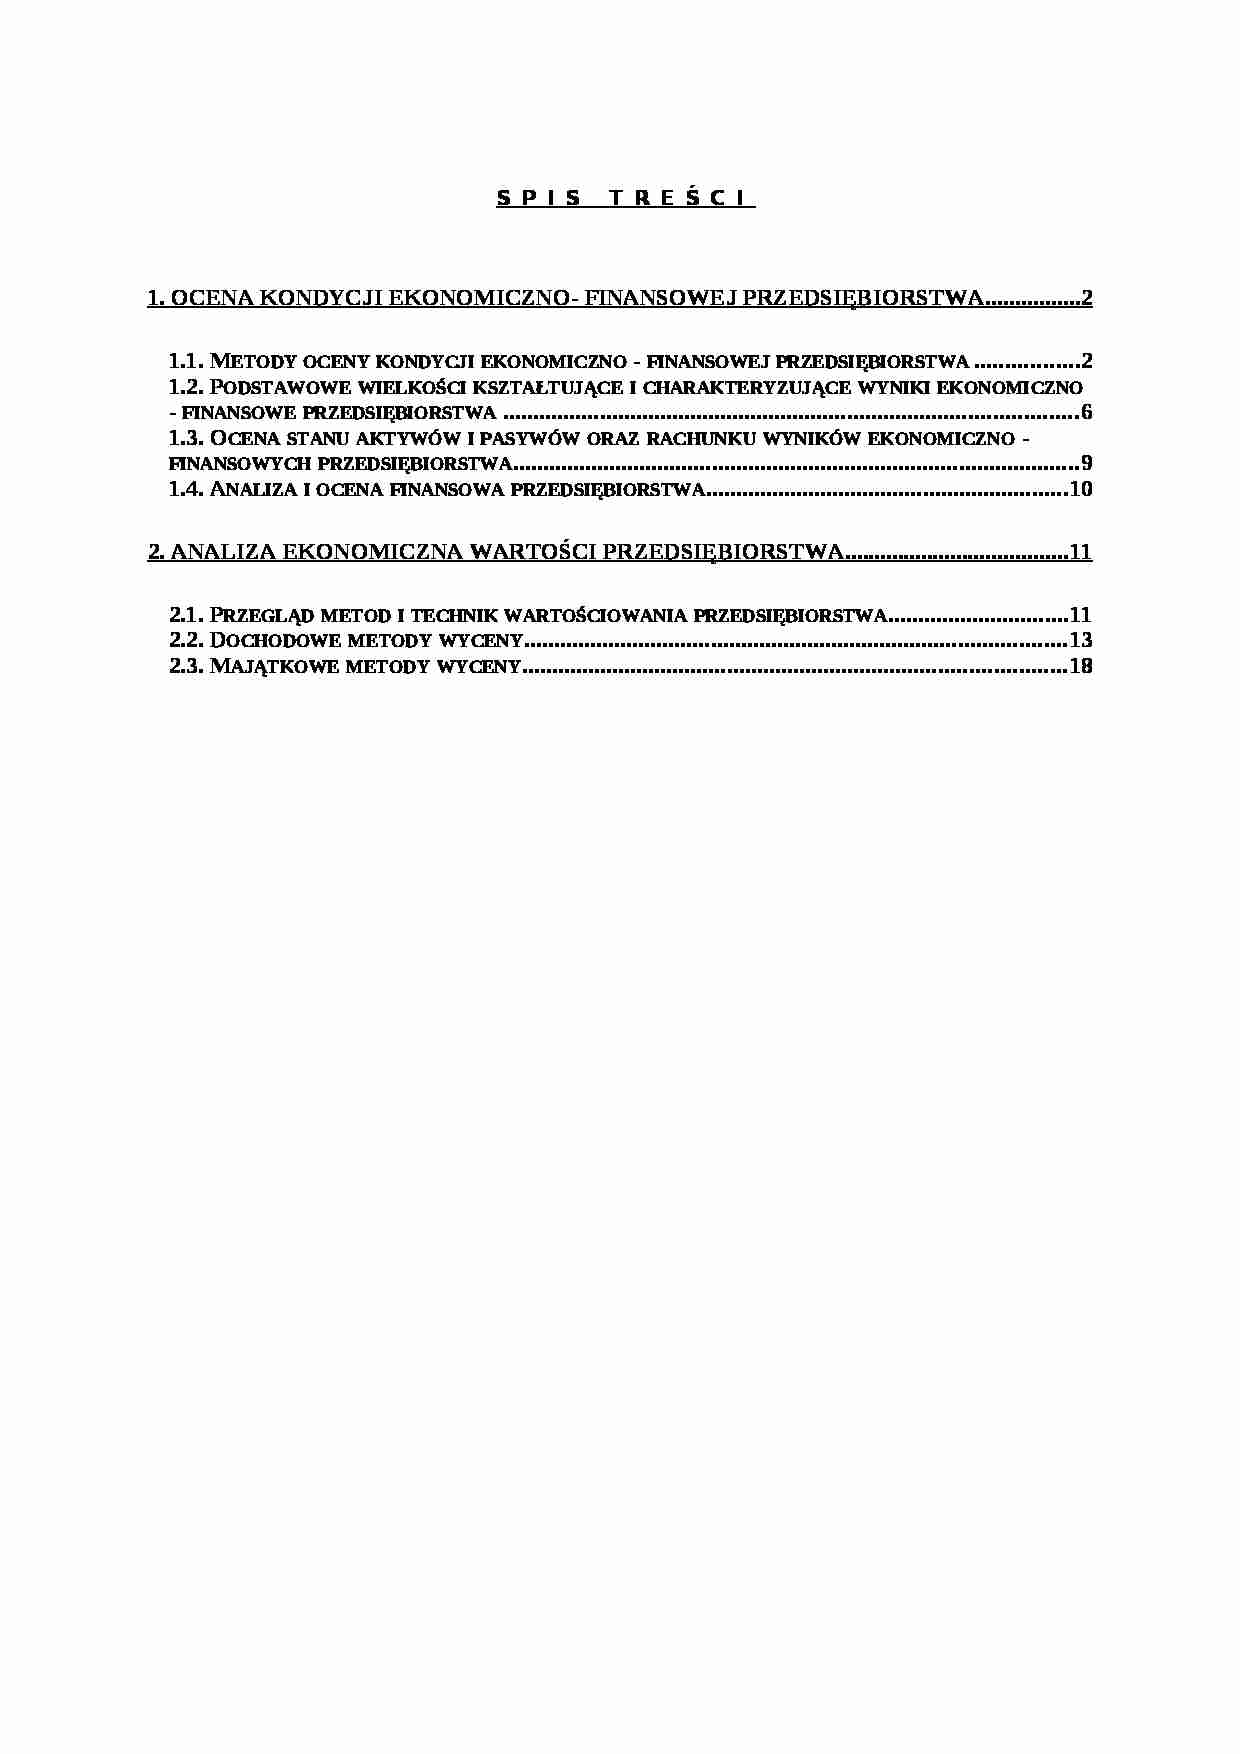 Ocena kondycji ekonomiczno-finansowej przedsiębiorstwa - strona 1